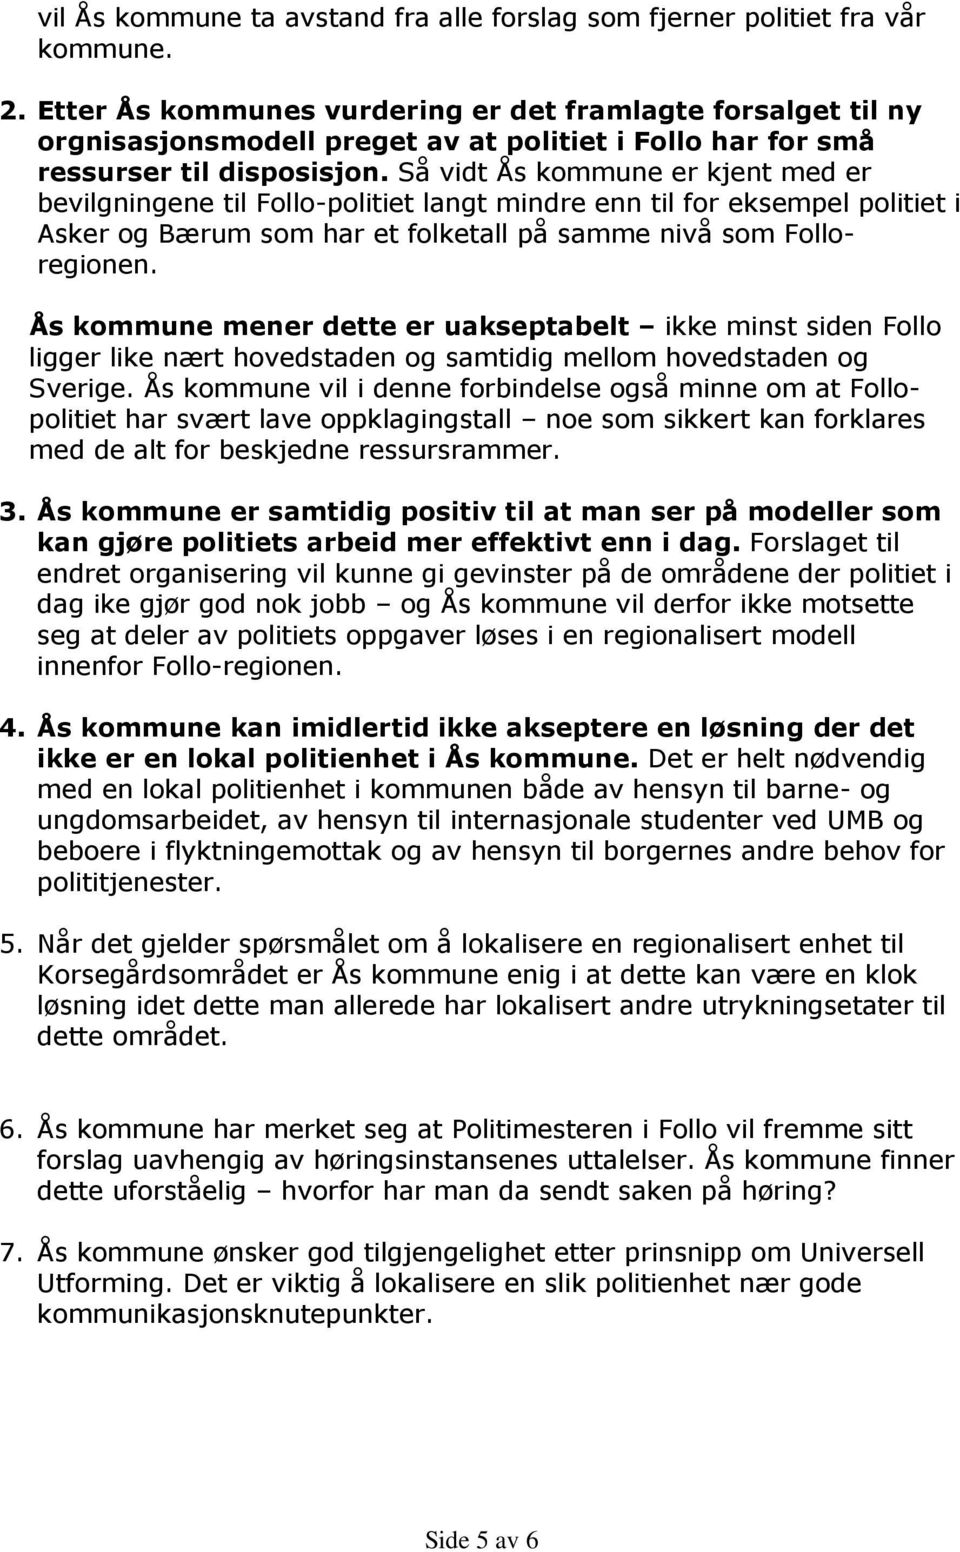 Så vidt Ås kommune er kjent med er bevilgningene til Follo-politiet langt mindre enn til for eksempel politiet i Asker og Bærum som har et folketall på samme nivå som Folloregionen.